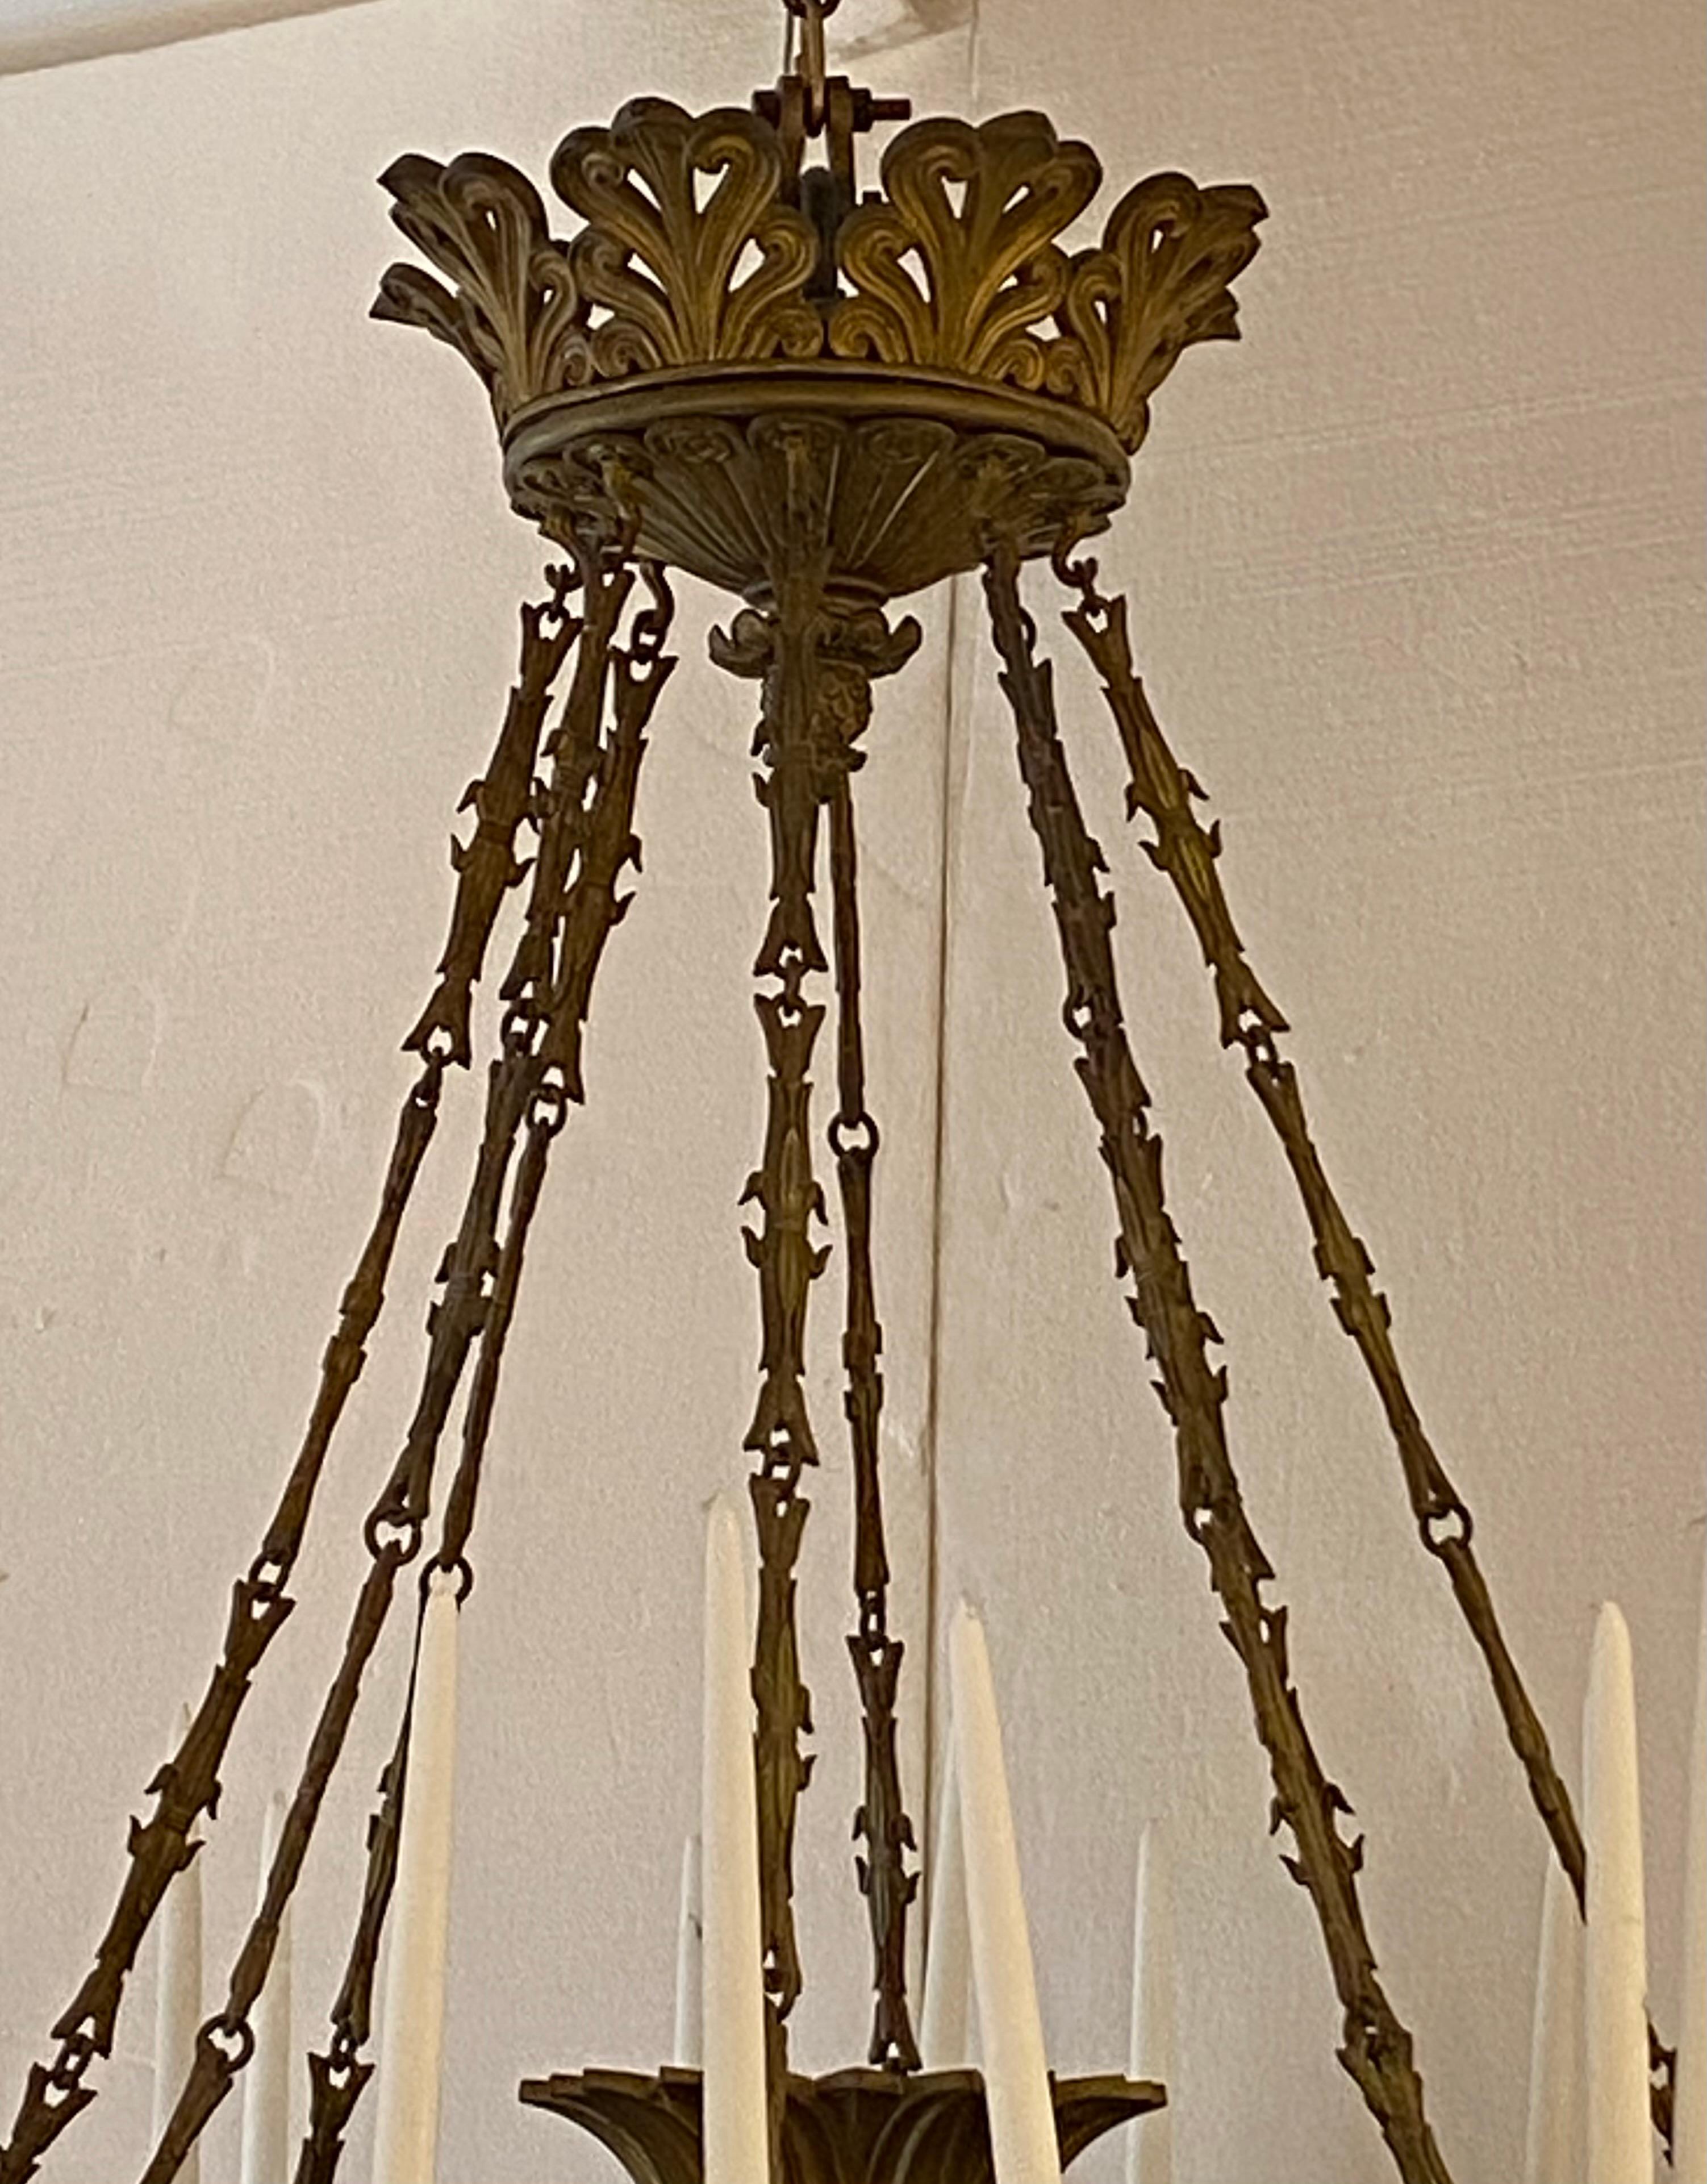 Lustre antique en bronze, des années 1950, non électrifié, avec 24 chandeliers.
 Bureau de l'ex-vice-président Dan Quayle en 1989.
 